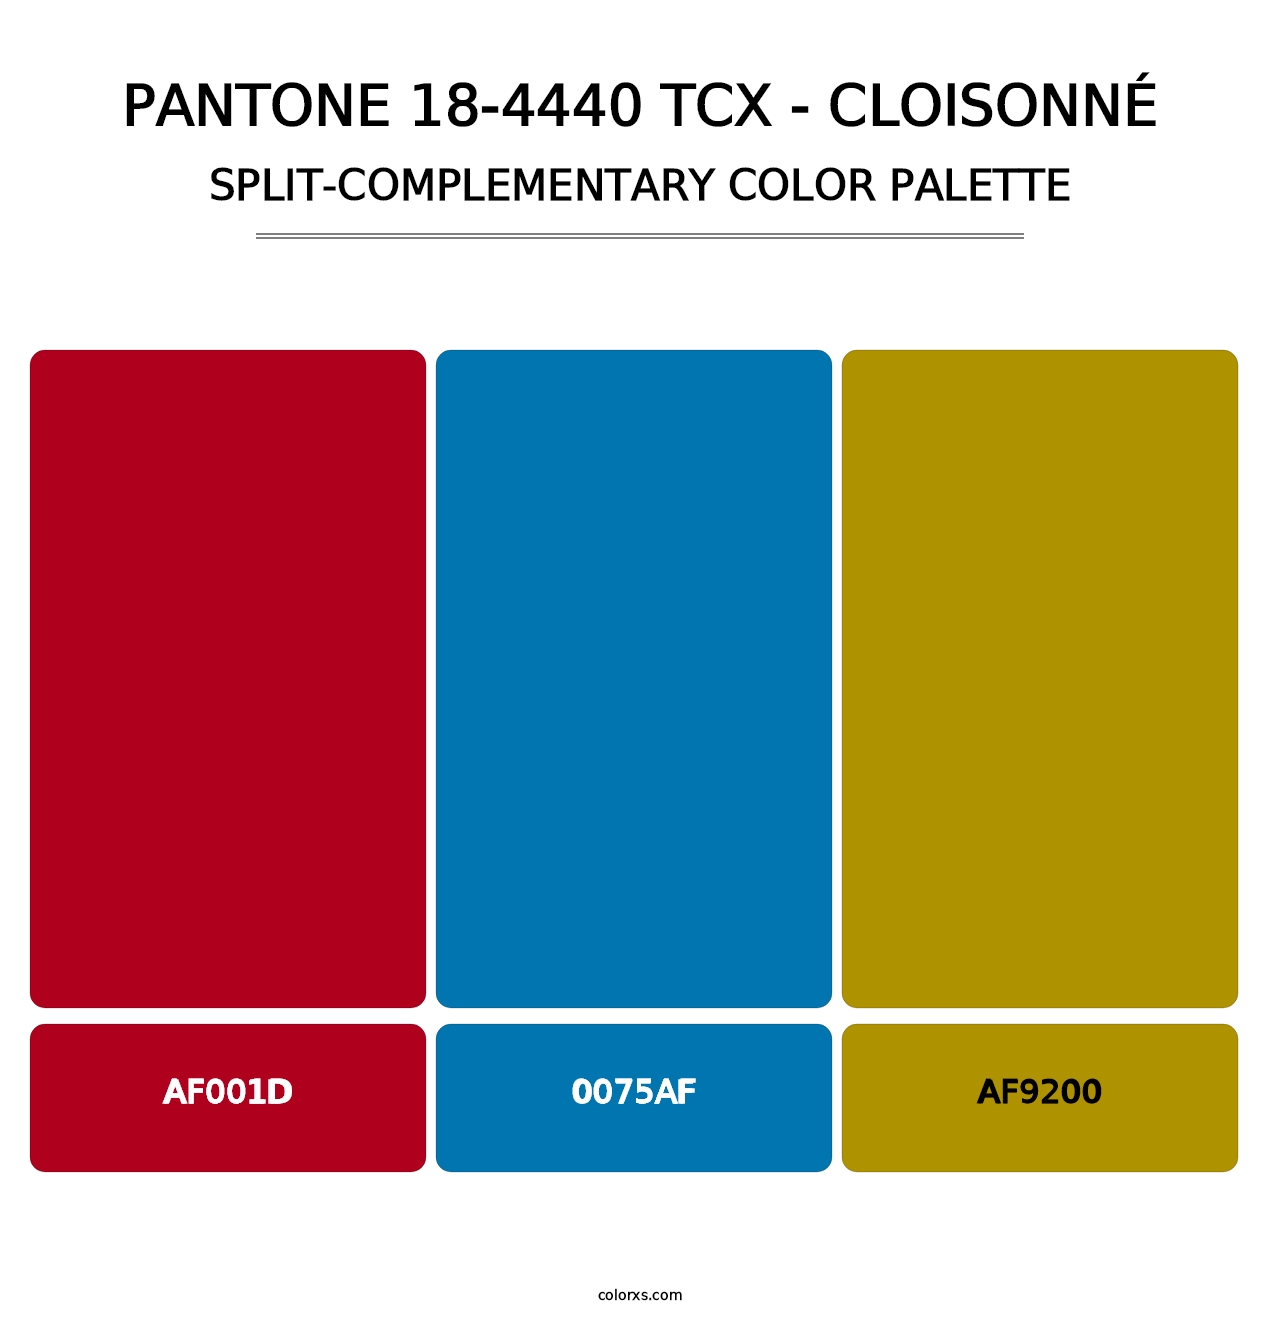 PANTONE 18-4440 TCX - Cloisonné - Split-Complementary Color Palette